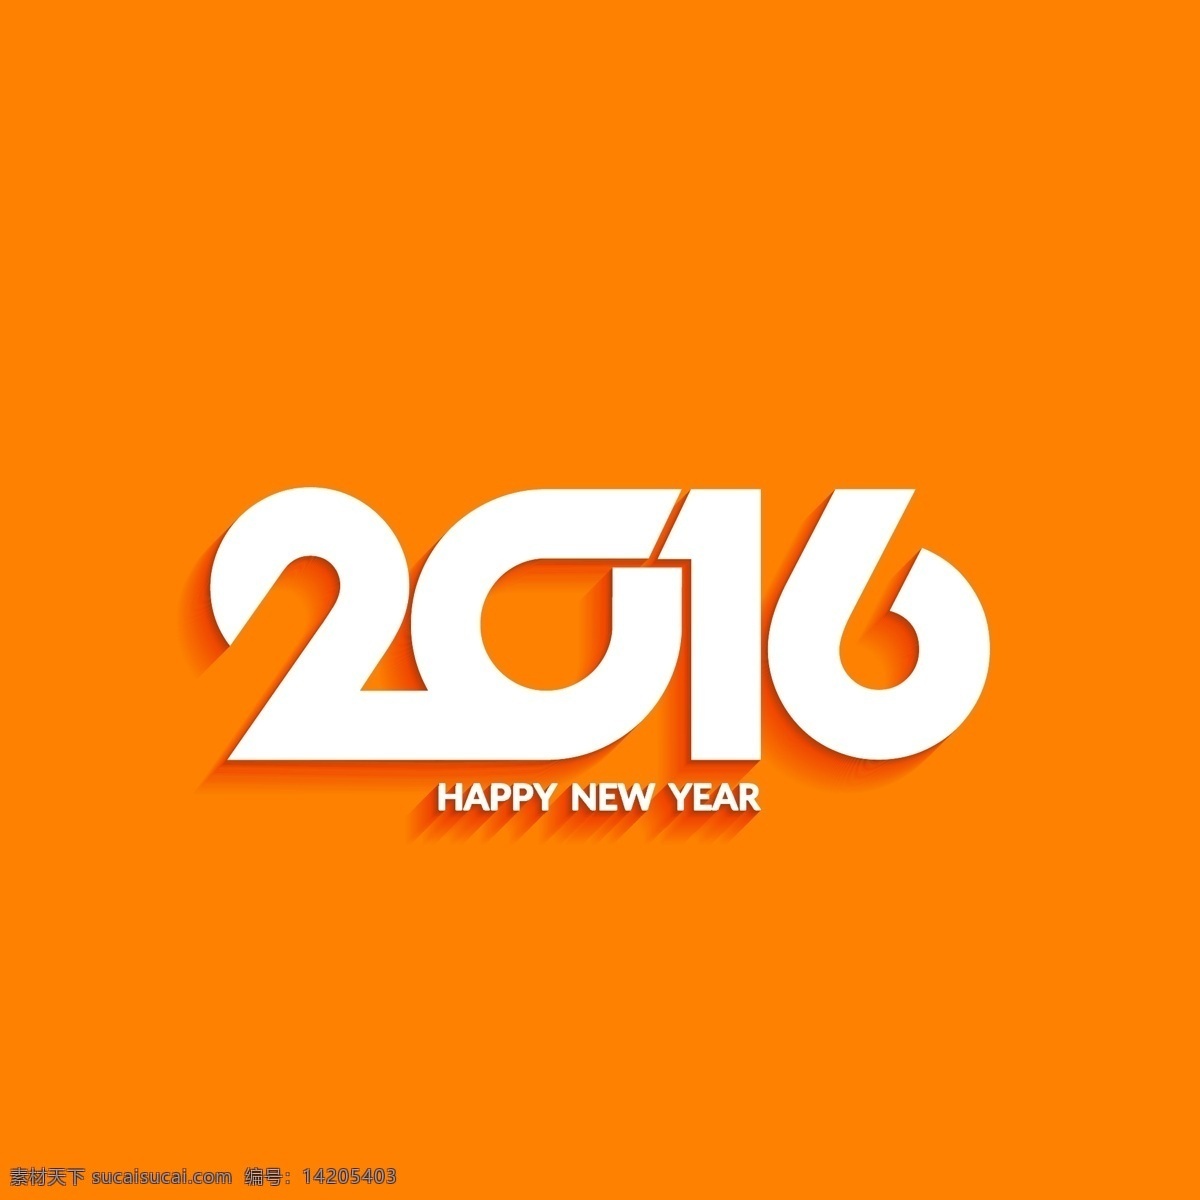 新 年 橙色 背景 派对 贺卡 新年 新的一年 冬天 快乐 颜色 庆祝 事件 节日 2016 现代 丰富多彩 节日快乐 橙色背景